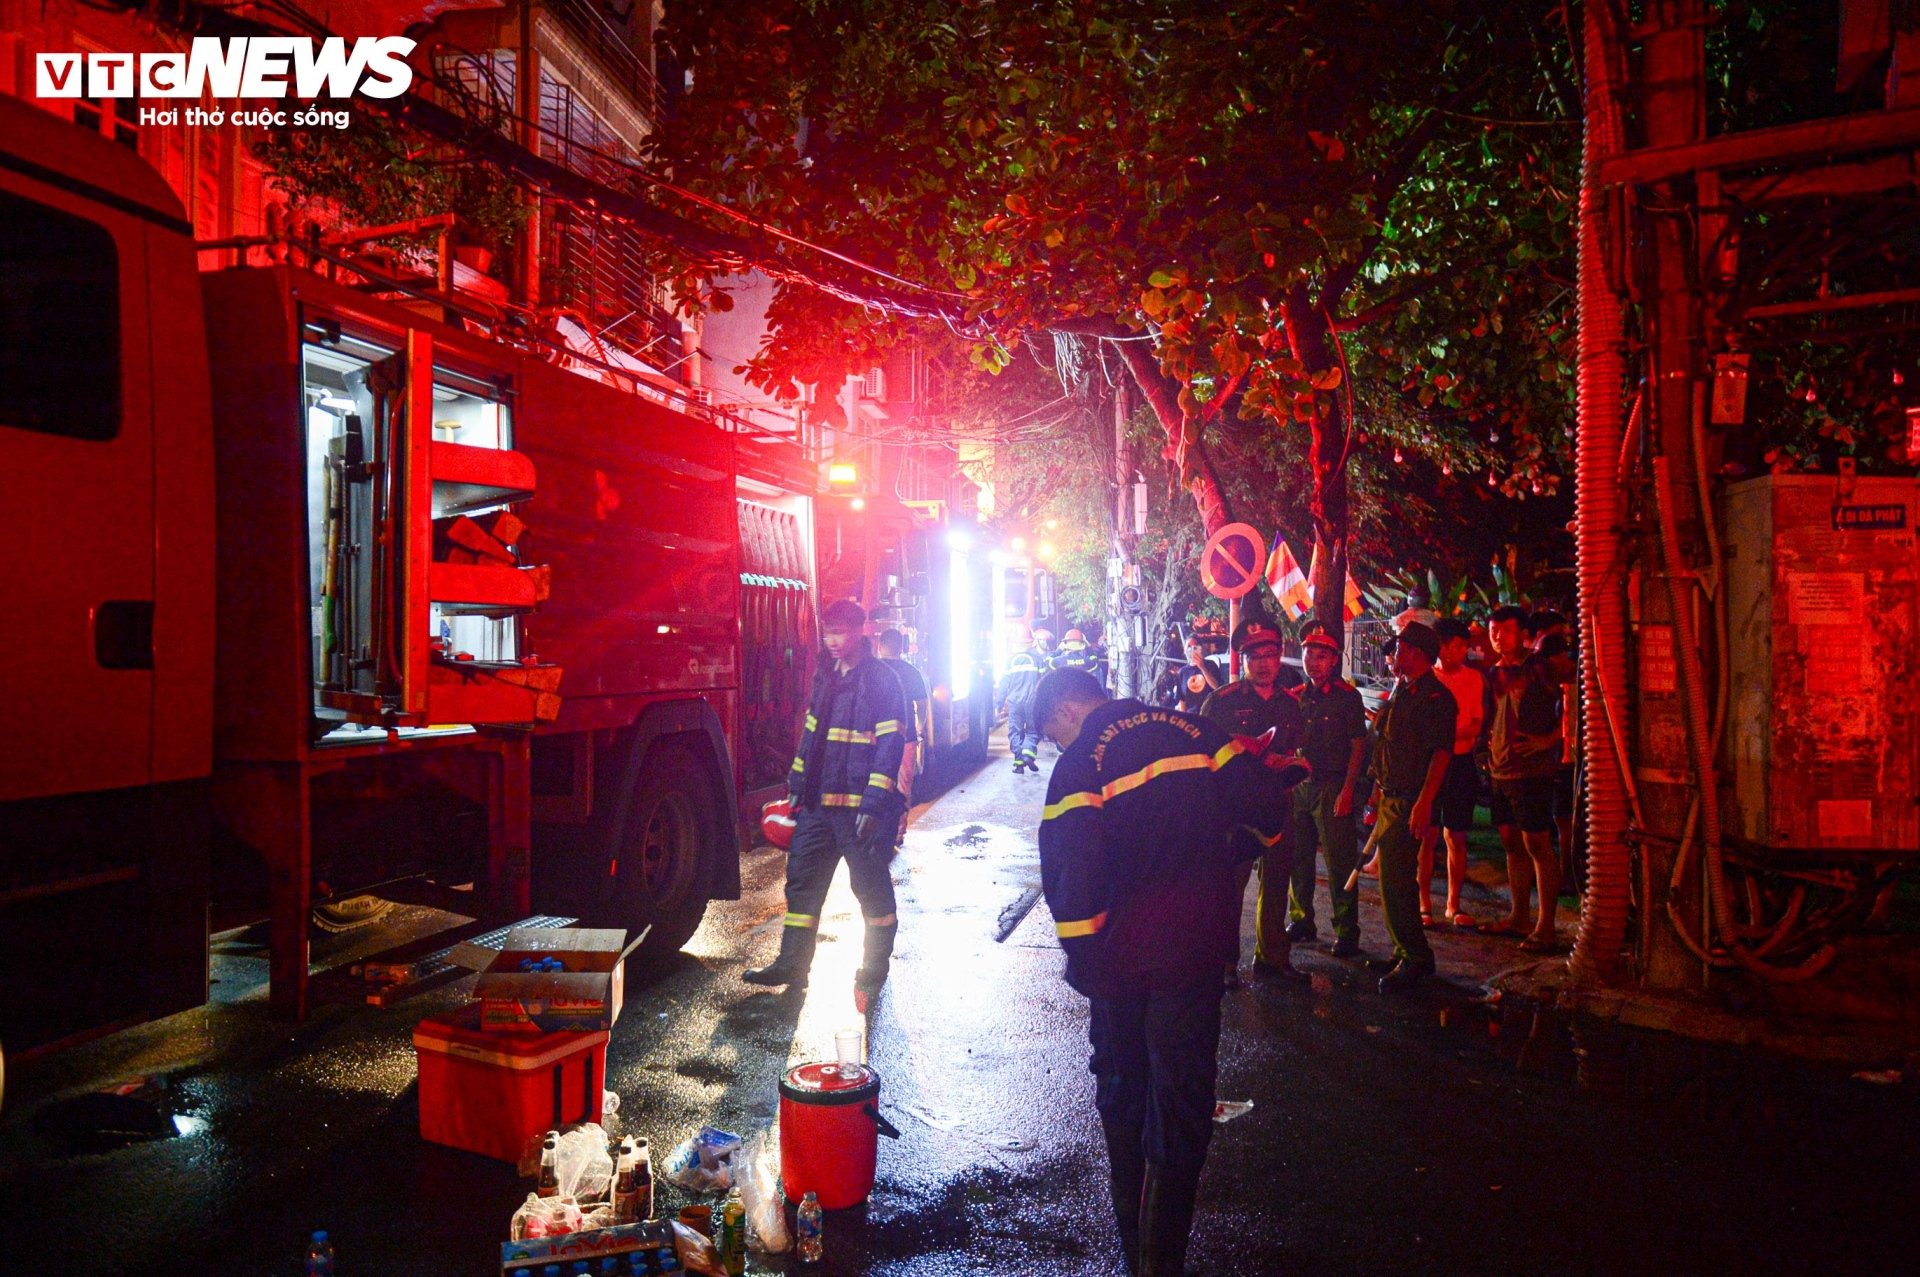 Hiện trường vụ cháy chung cư mini ở Hà Nội trong đêm, nhiều người ngất xỉu - Ảnh 2.